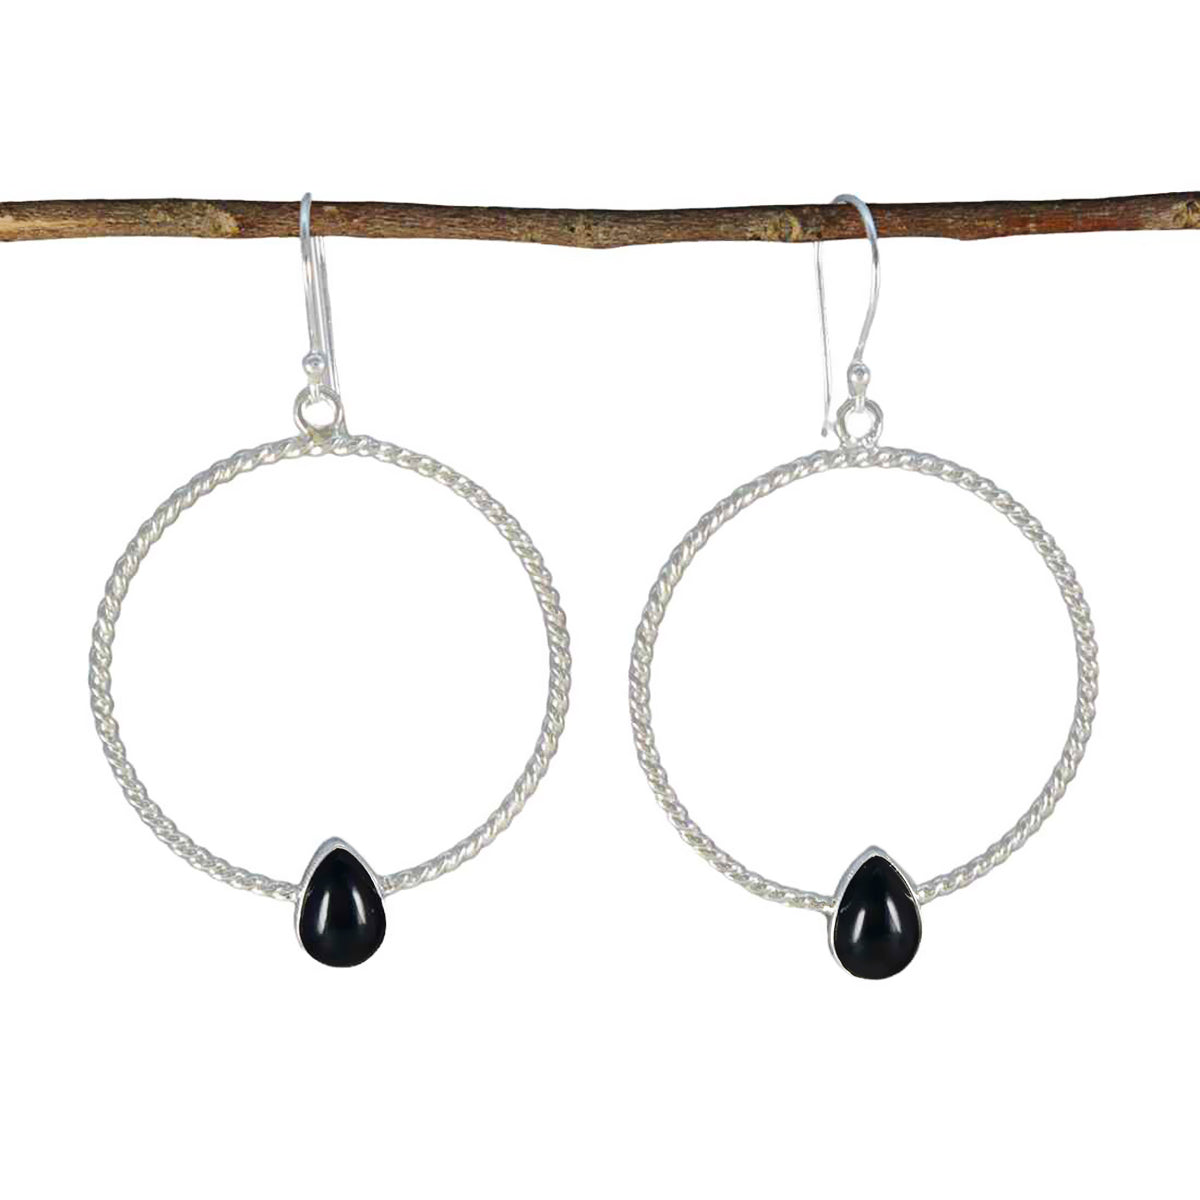 Riyo Stunning Sterling Silver Earring For Sister Black Onyx Earring Bezel Setting Black Earring Dangle Earring